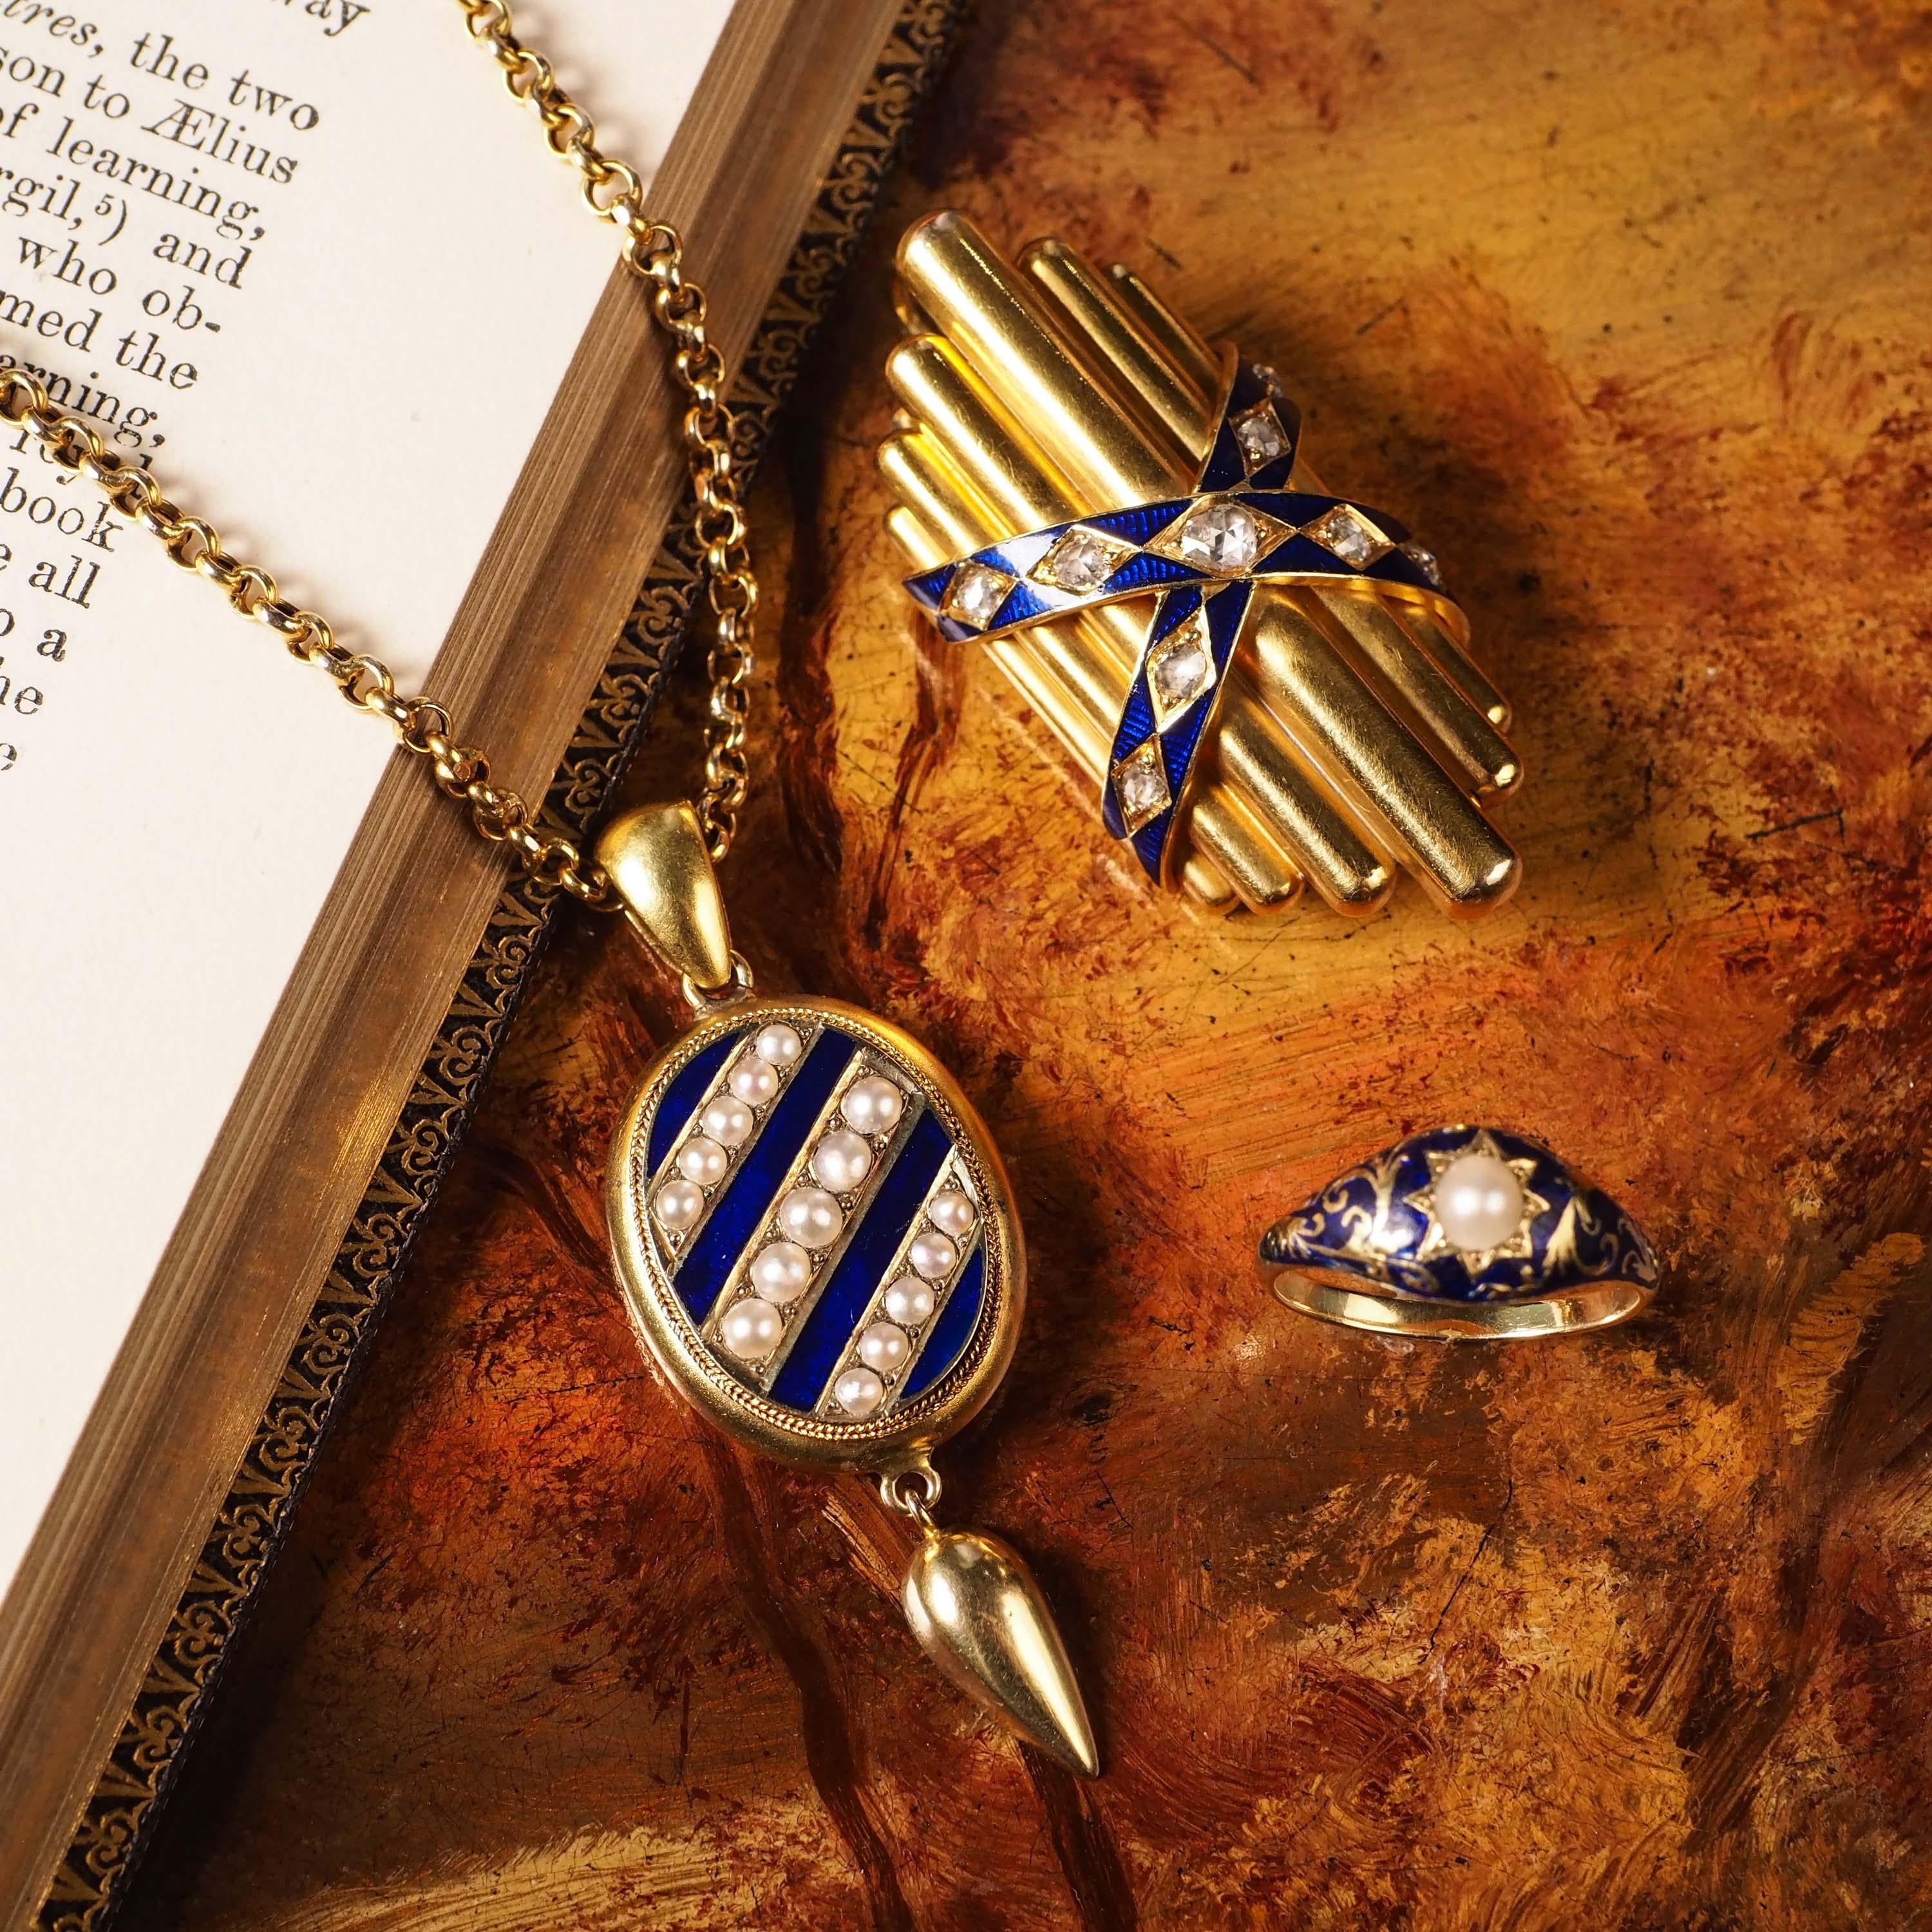 Antique 18K Gold Diamond Rose Cut Pendant Necklace with Blue Enamel - c.1880 For Sale 11